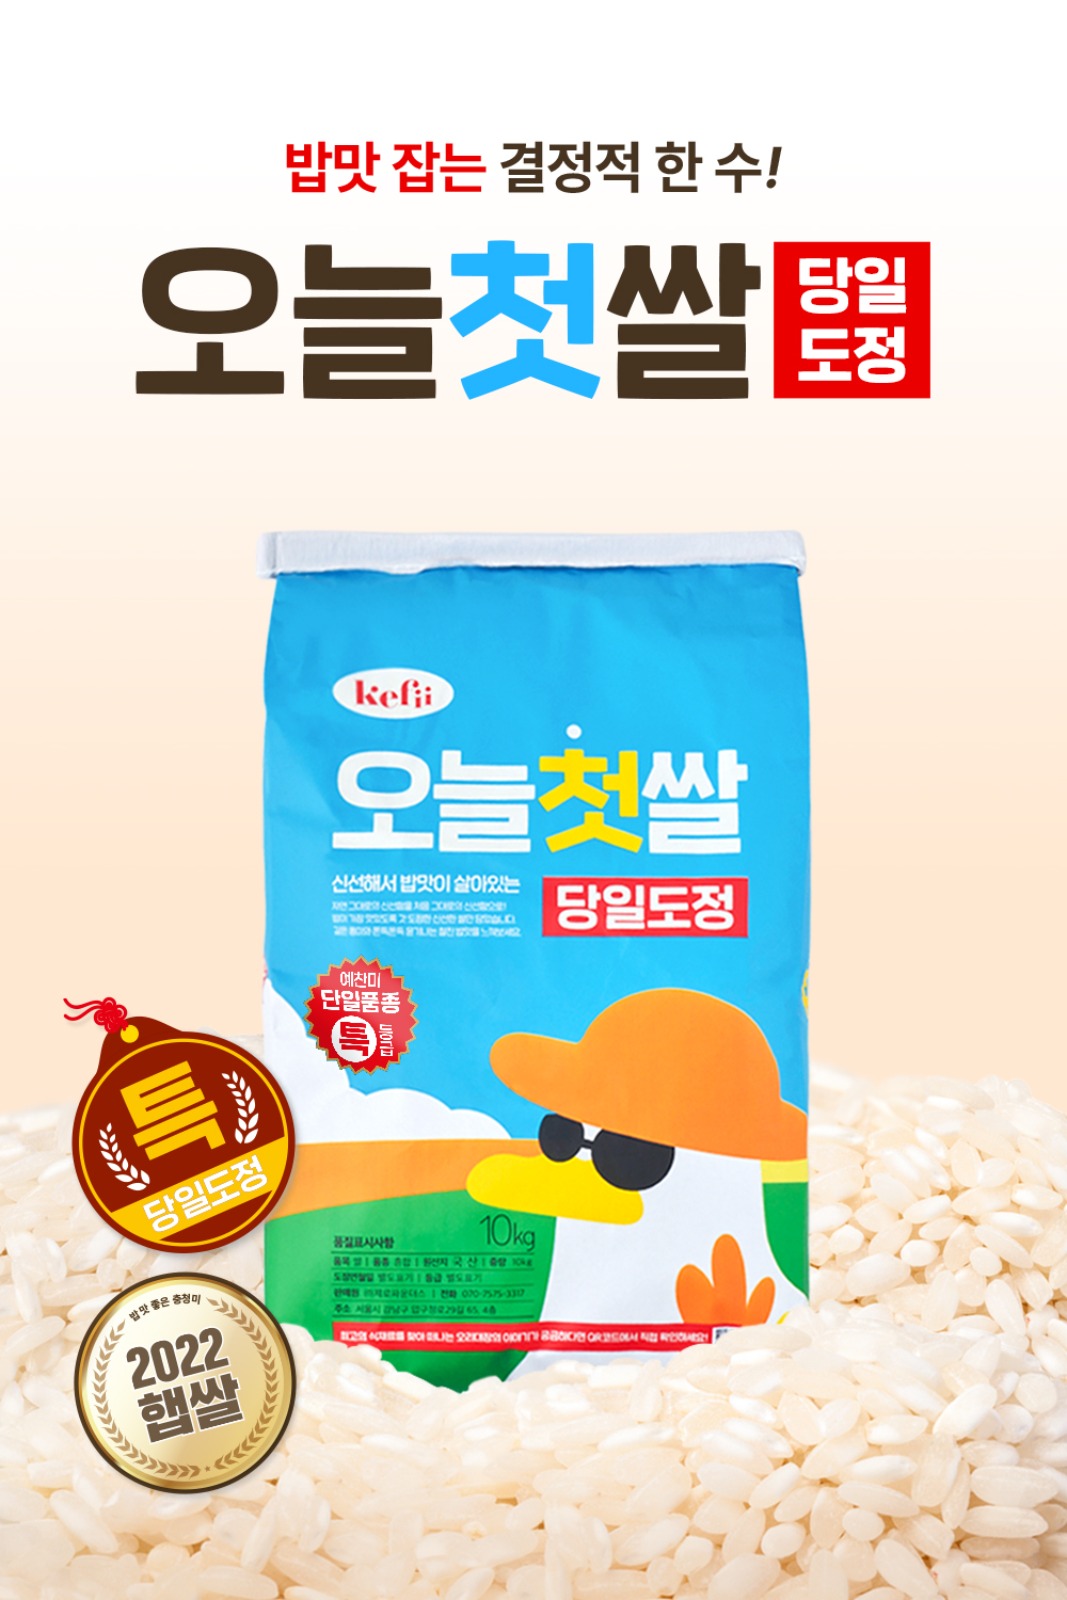 ★특등급★ 주문즉시 도정!단일품종 예찬미 케피 오늘첫쌀 10kg